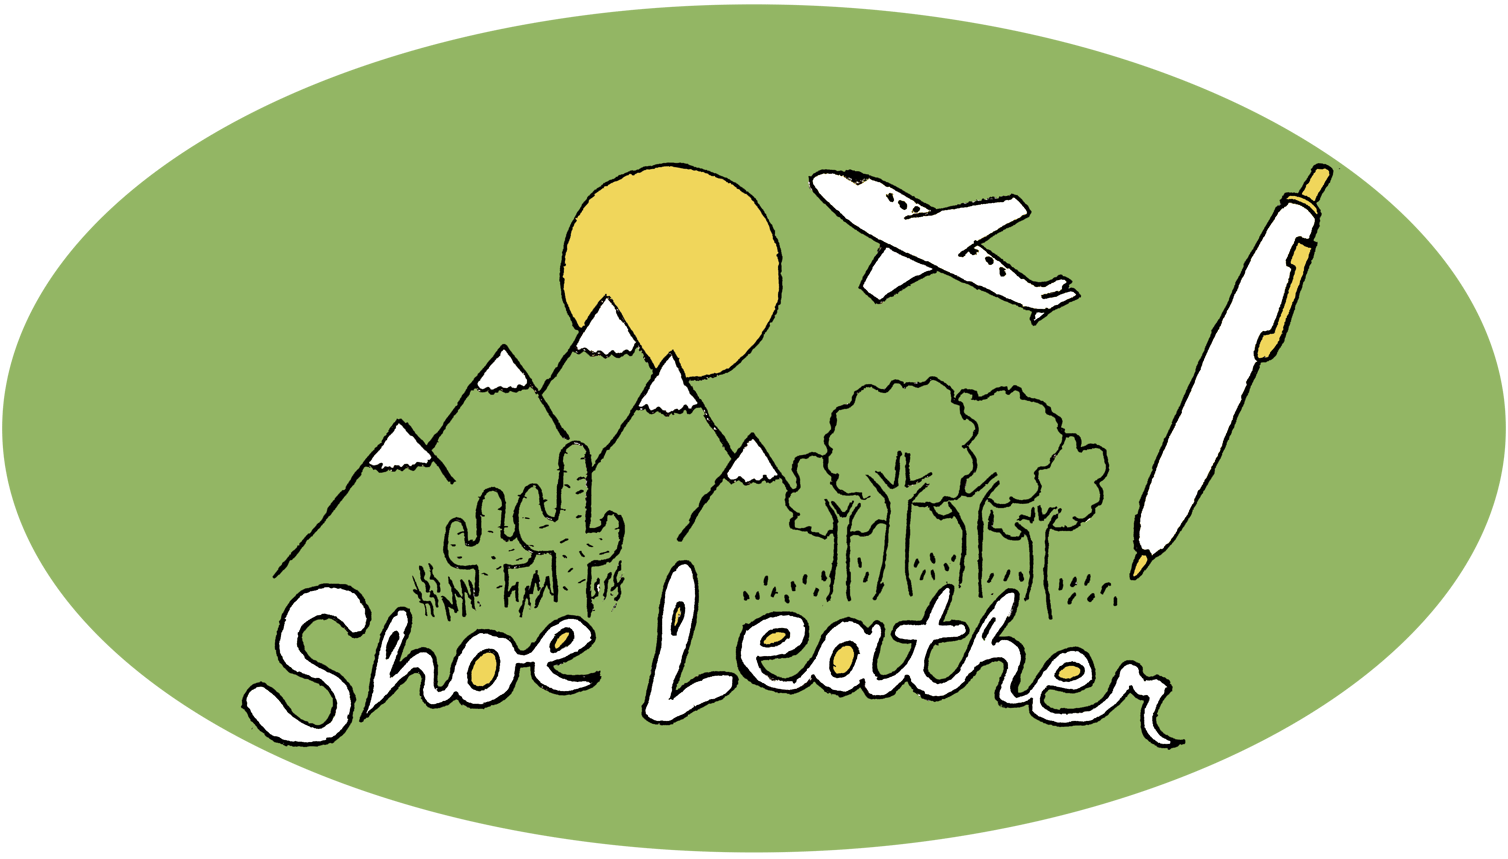 Shoeleather